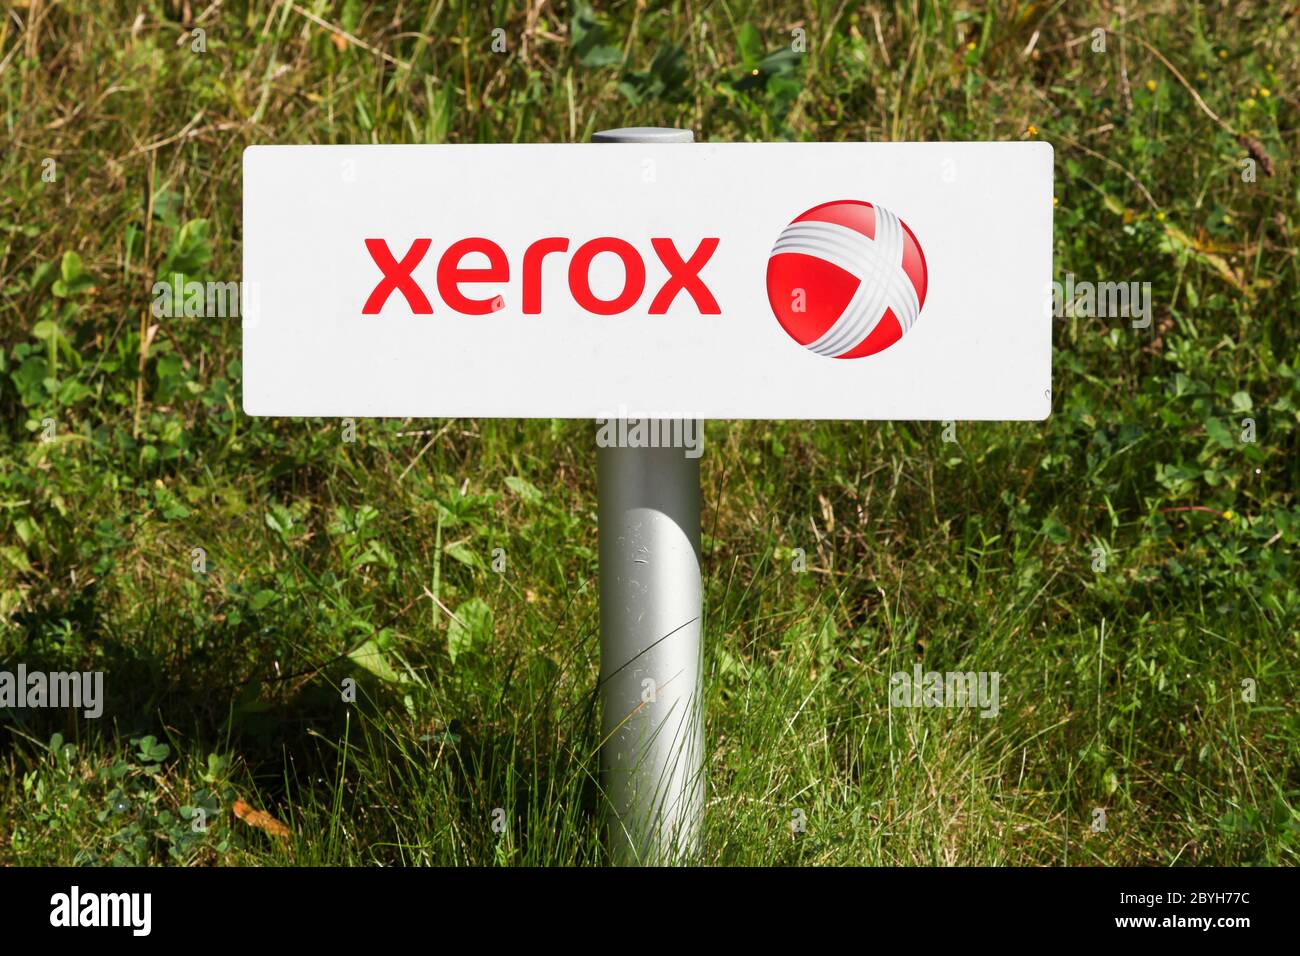 Ballerup, Danemark - 10 septembre 2017 : logo Xerox sur une pancarte. Xerox est une société mondiale américaine qui vend des services d'affaires et des documents Banque D'Images